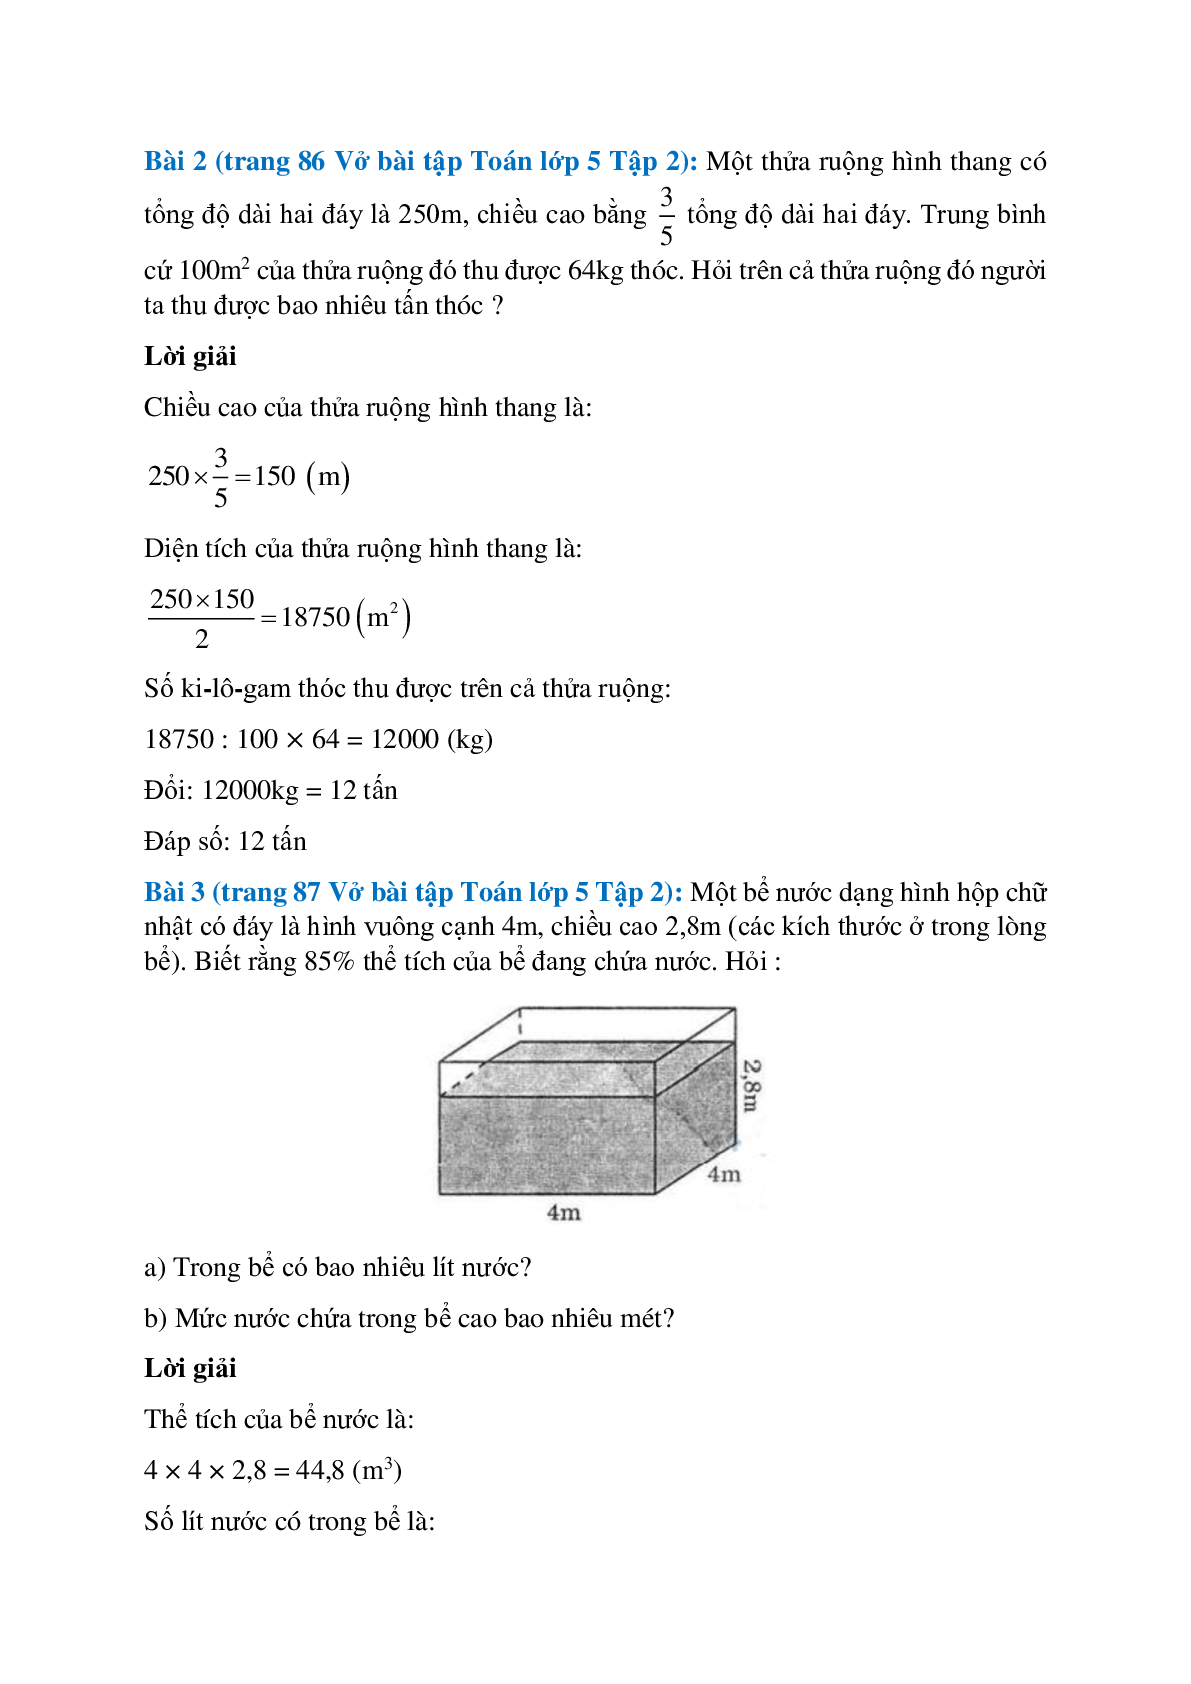 Vở bài tập Toán lớp 5 Tập 2 trang 86, 87 Bài 148: Ôn tập về đo diện tích và đo thể tích (tiếp theo) (trang 2)